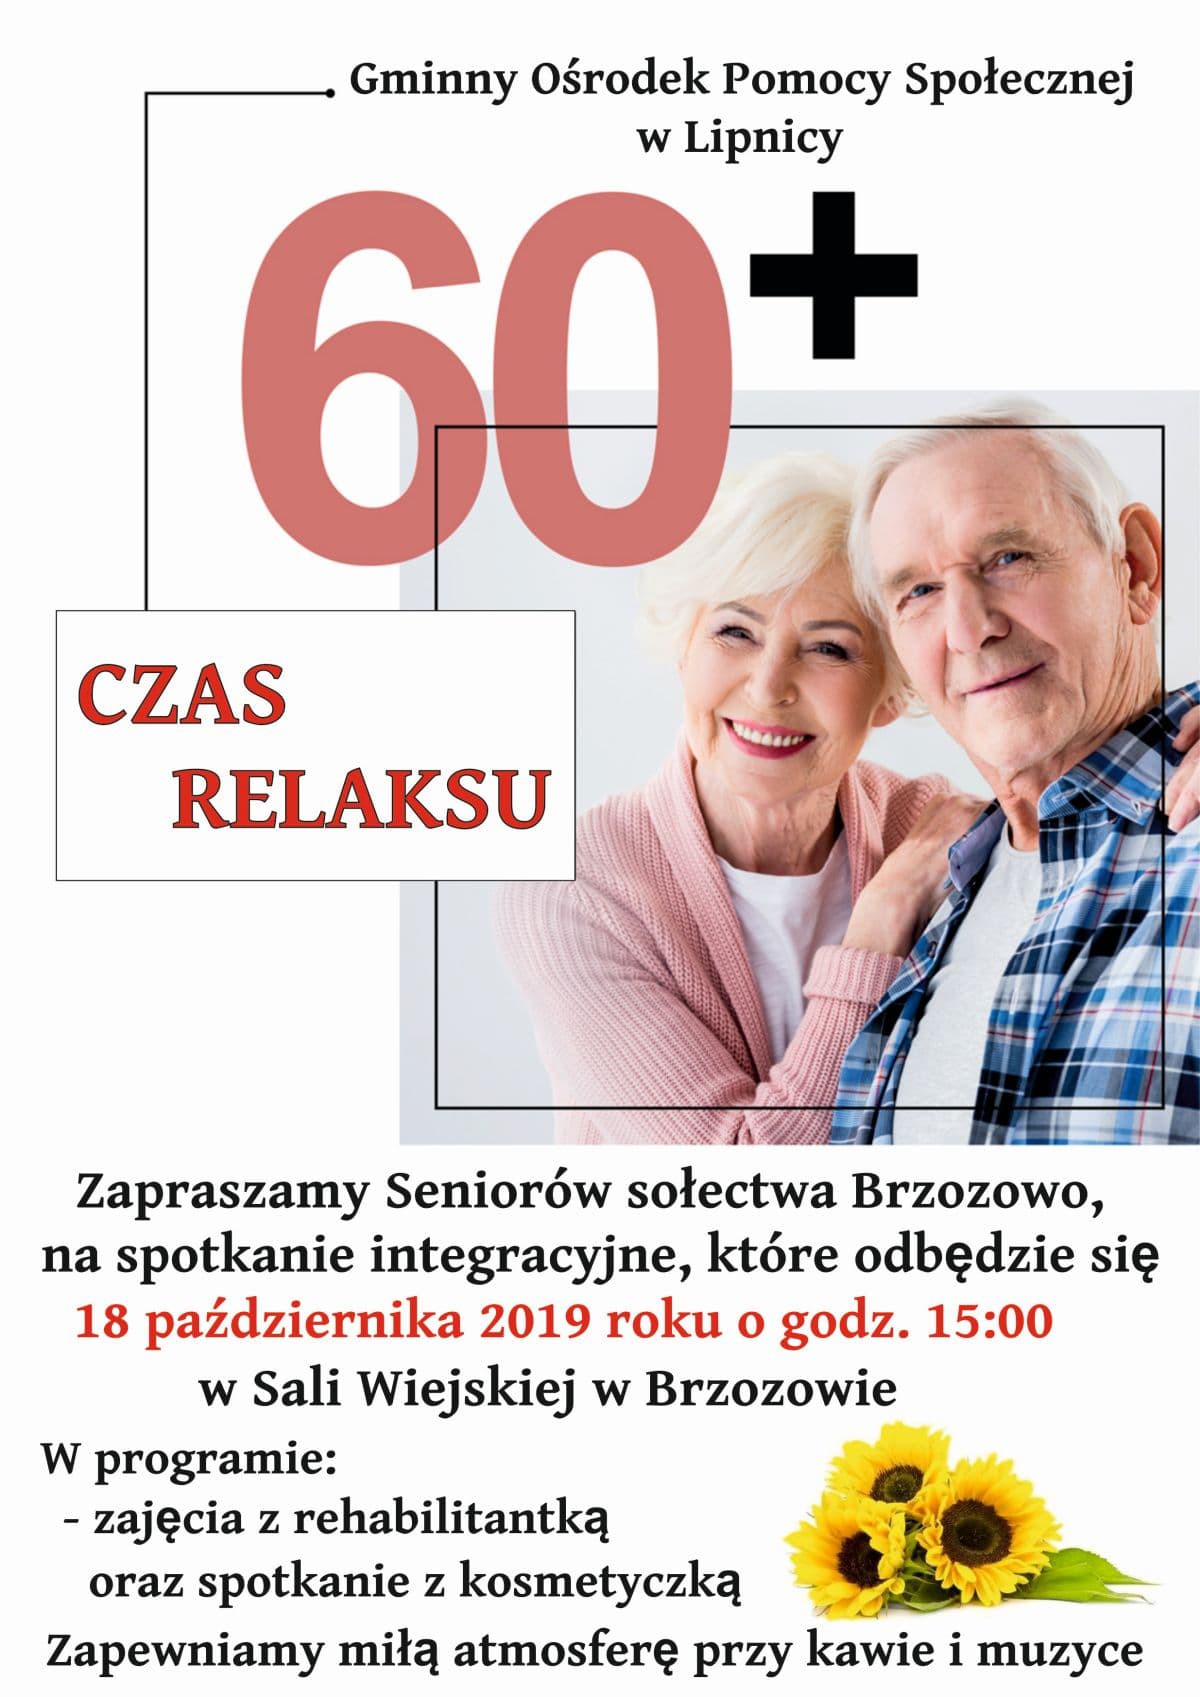 Plakat informujący o spotkaniu integracyjnym dla seniorów, które odbędzie się 18 października 2019 o godzinie 15:00 w Sali Wiejskiej w Brzozowie.